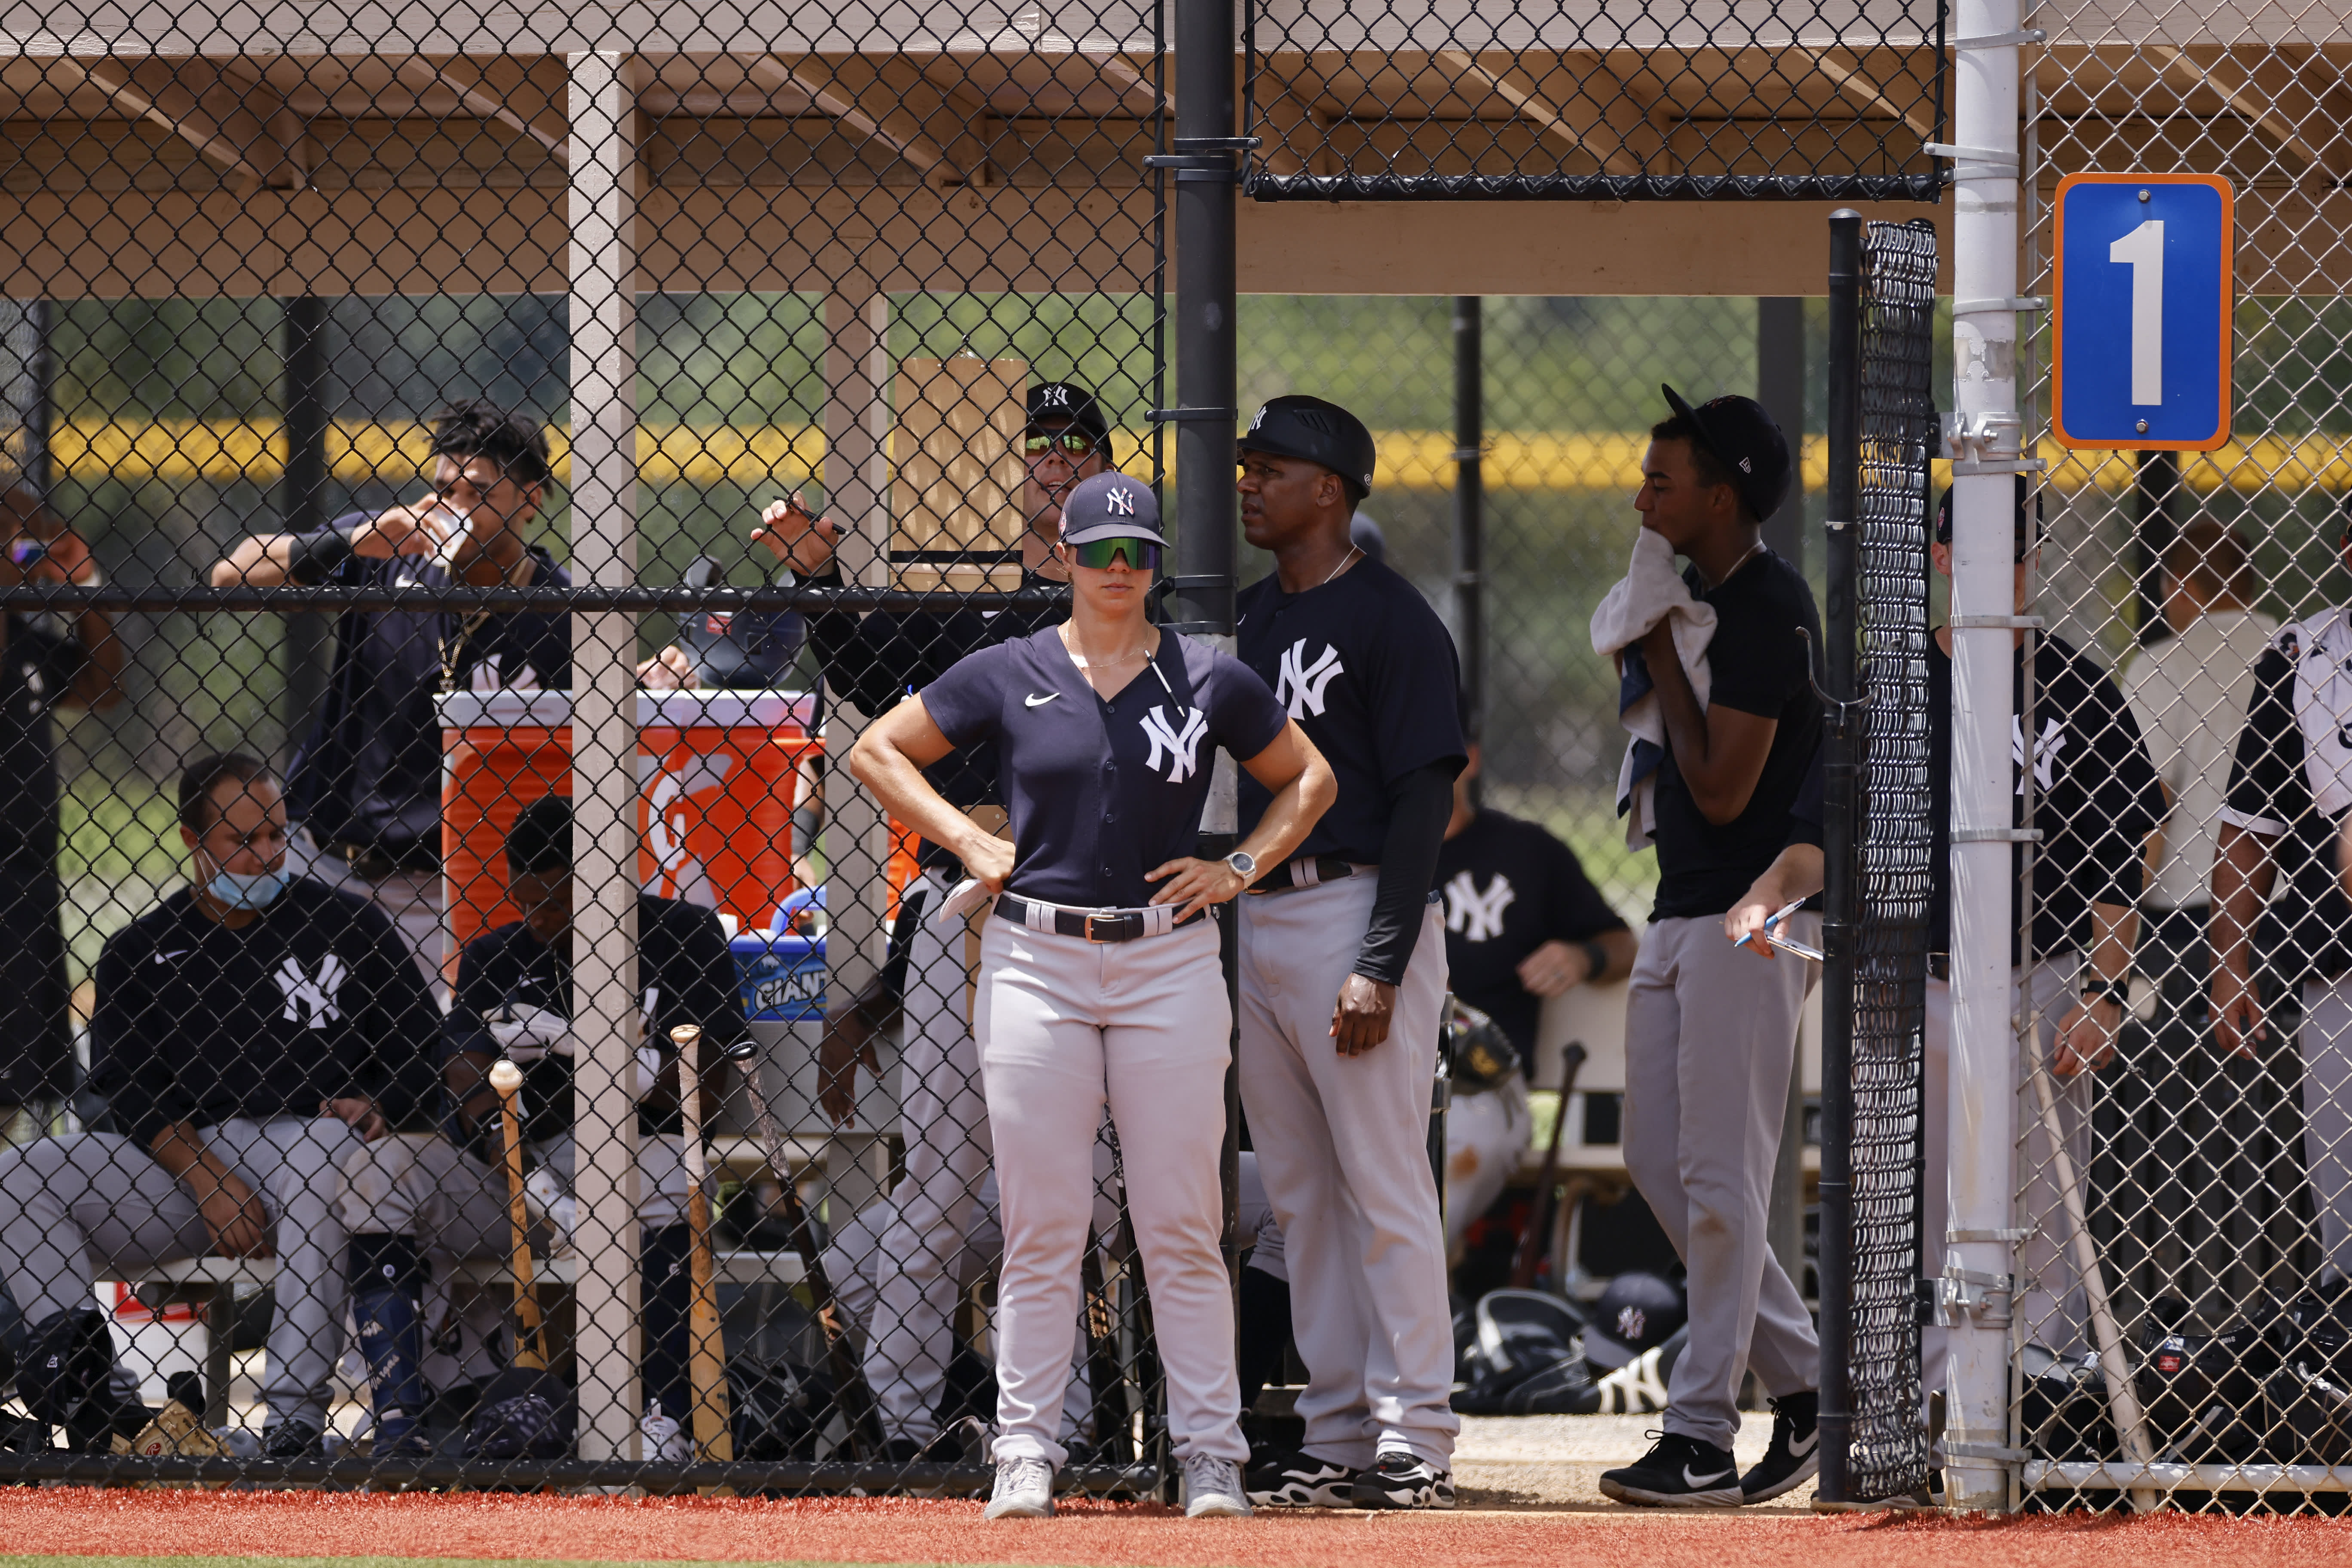 Rachel Balkovec, Yankees minor league manager, doing better - Newsday